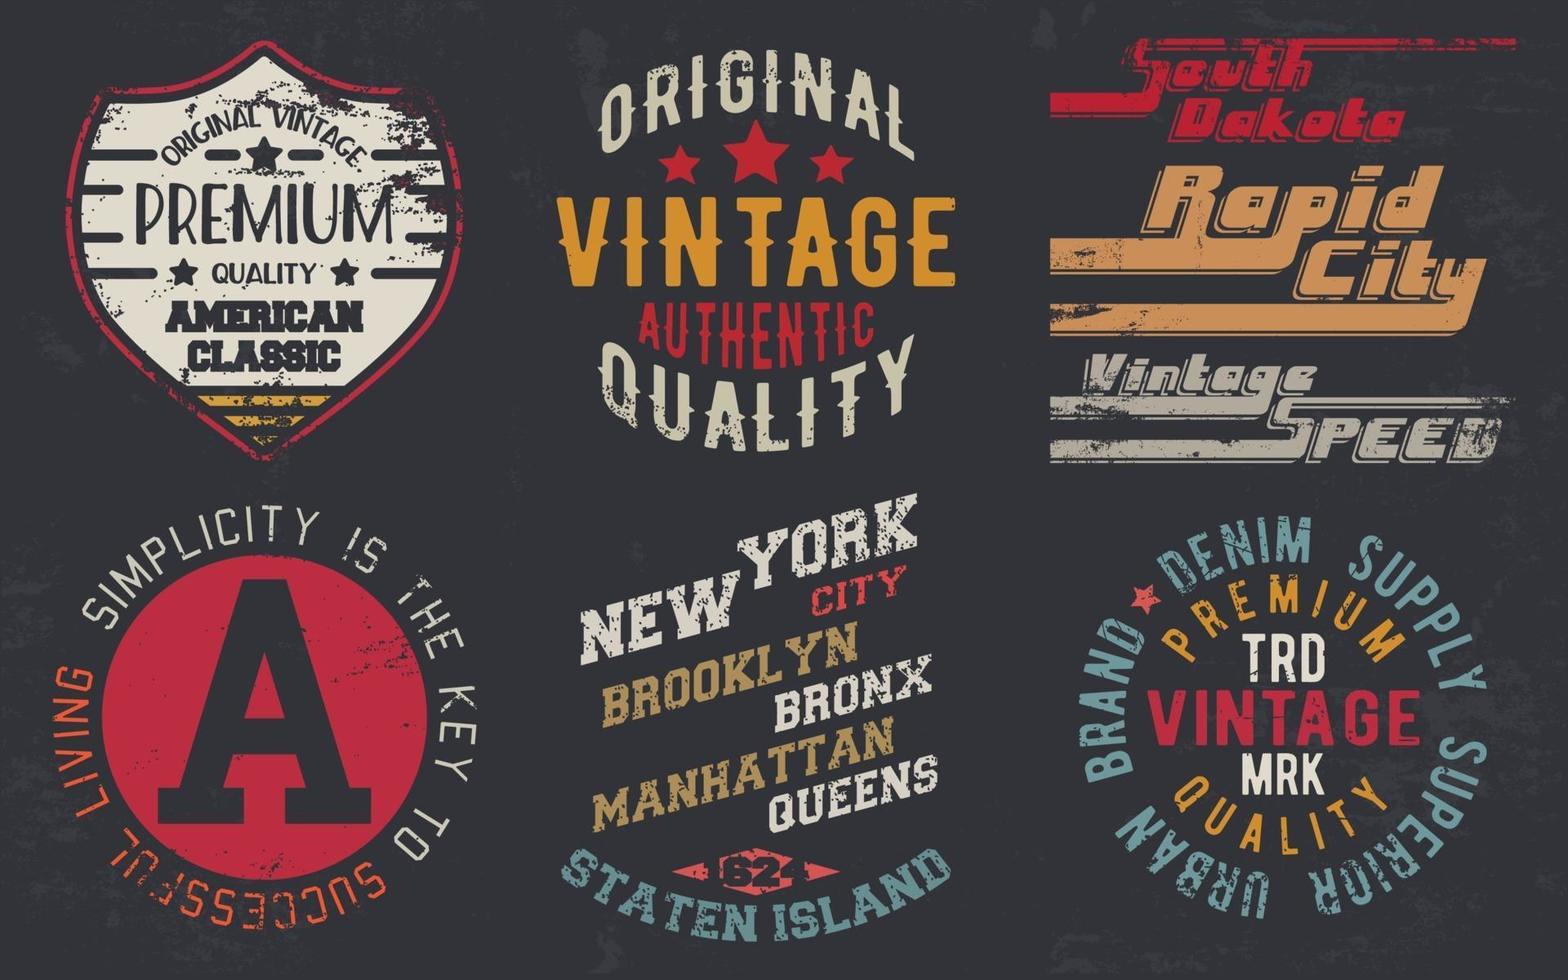 Impresión de diseño vintage para sellos de camisetas, apliques de camisetas, tipografía de moda, insignias, etiquetas de ropa, jeans y ropa casual. ilustración vectorial vector